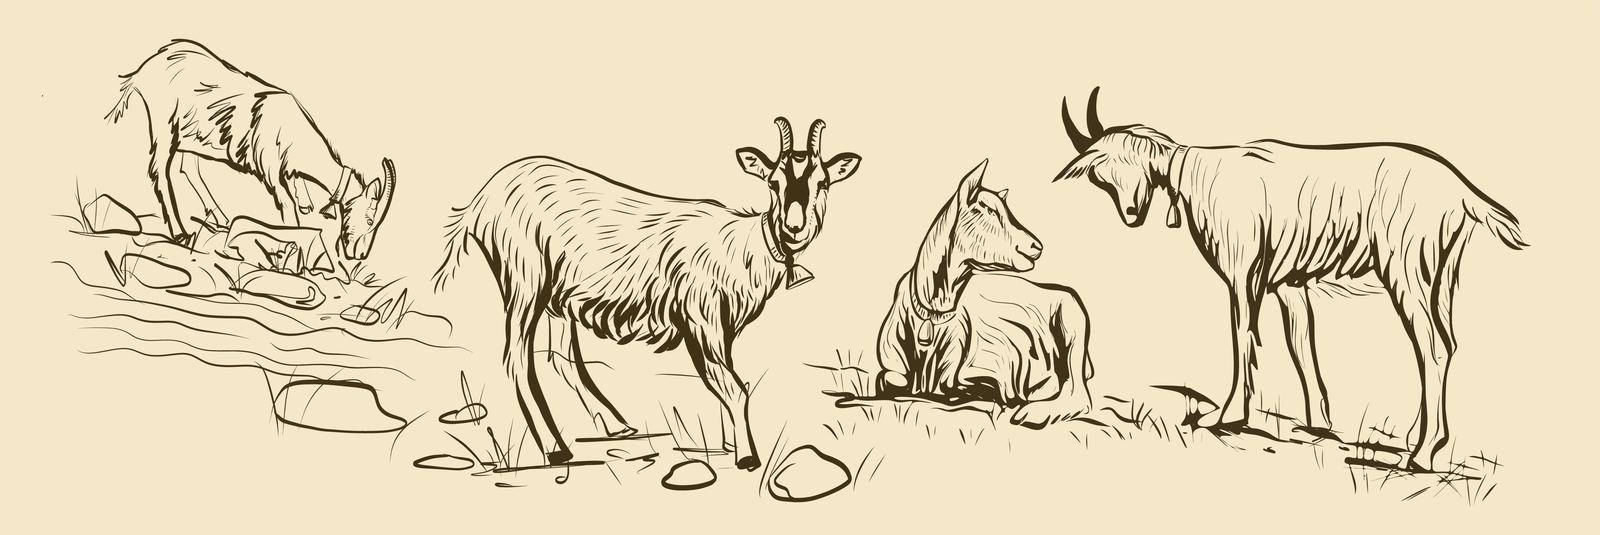 Sketch 4 goats grazing in a meadow by Manka